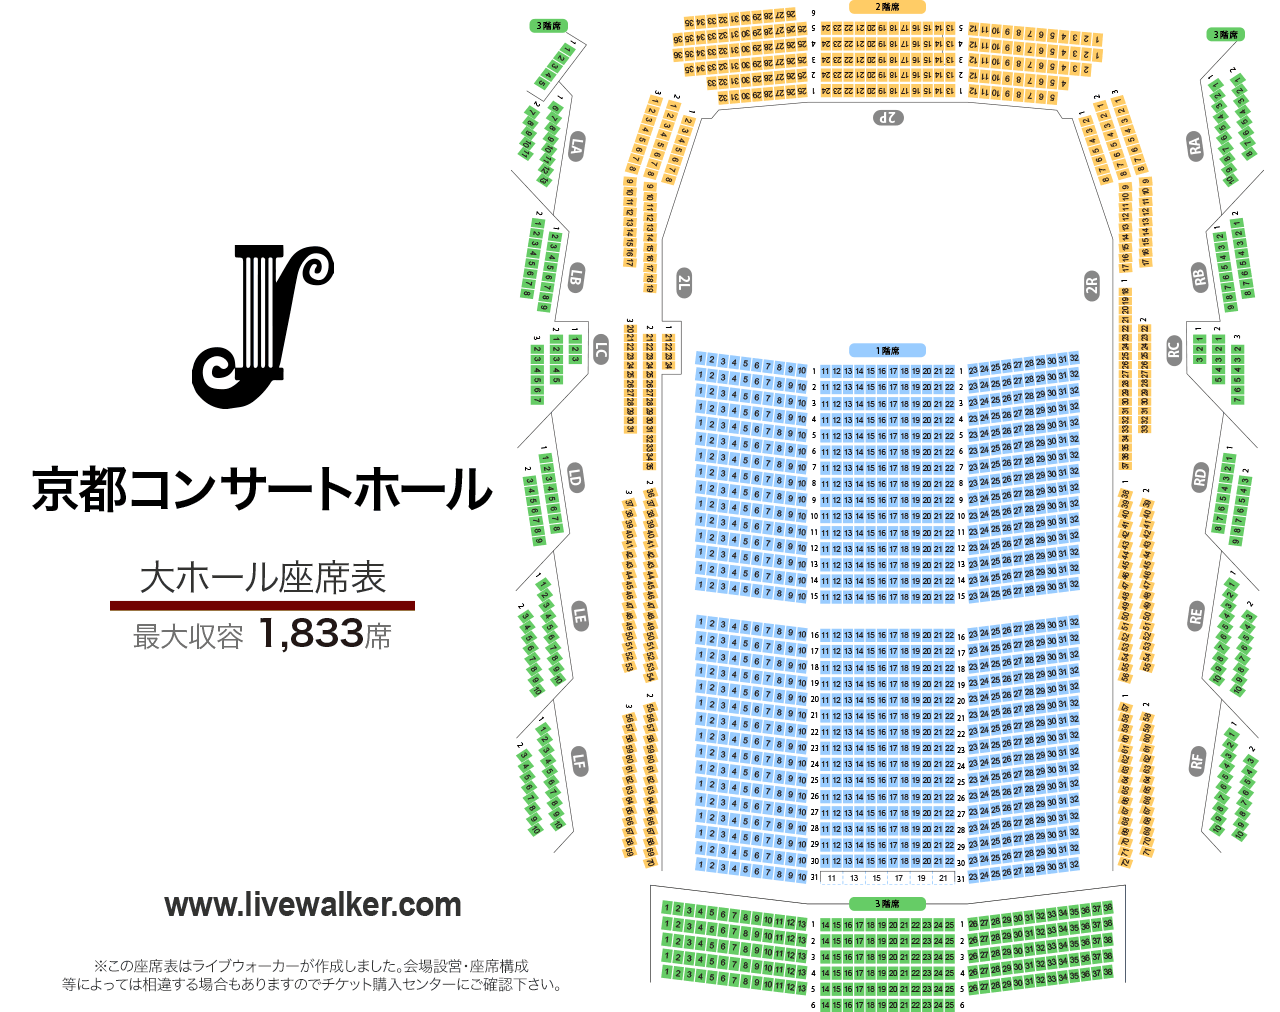 京都コンサートホール大ホールの座席表